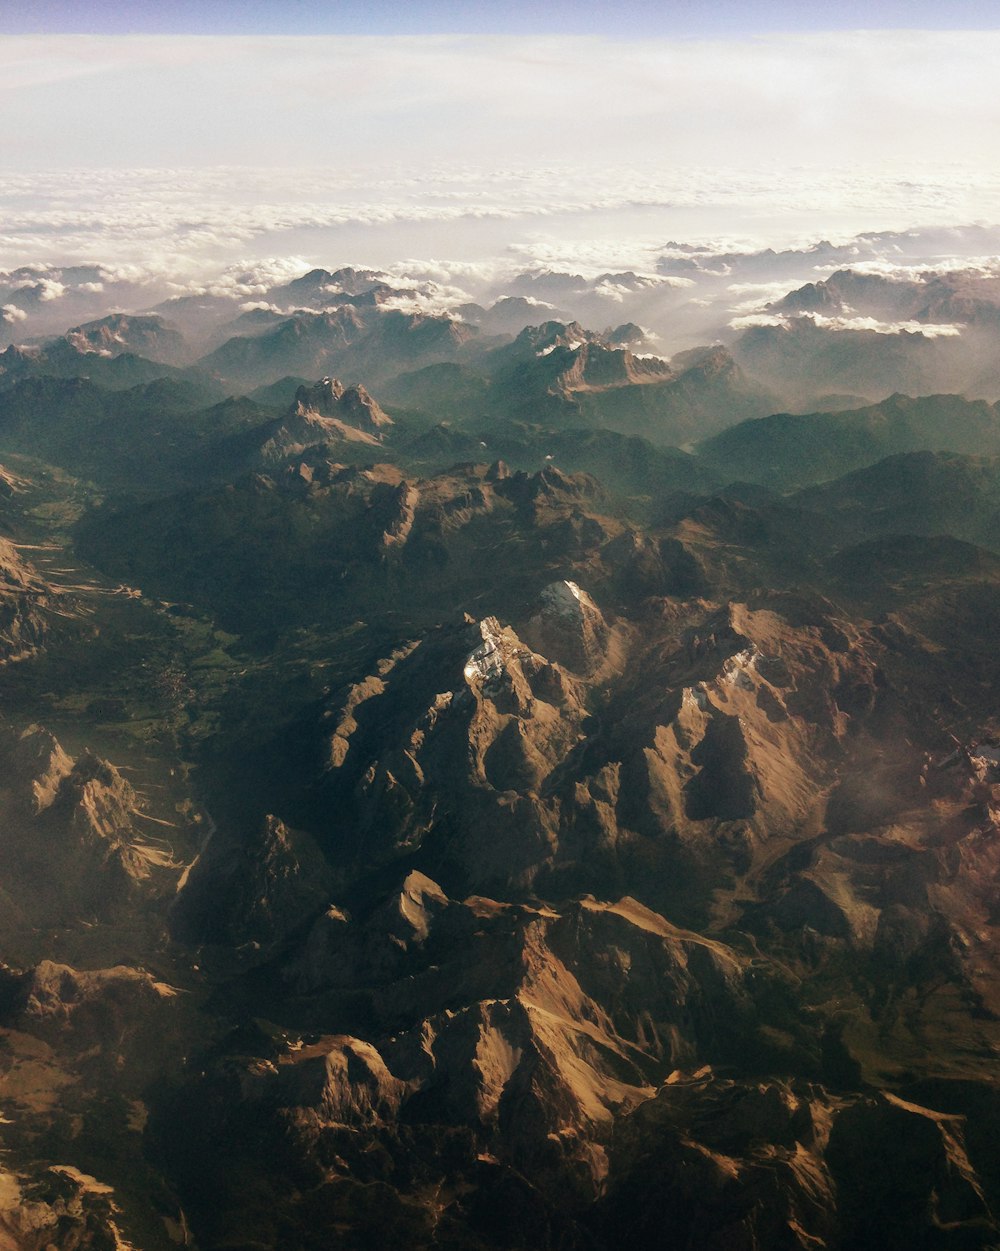 브라운 마운틴의 항공 사진